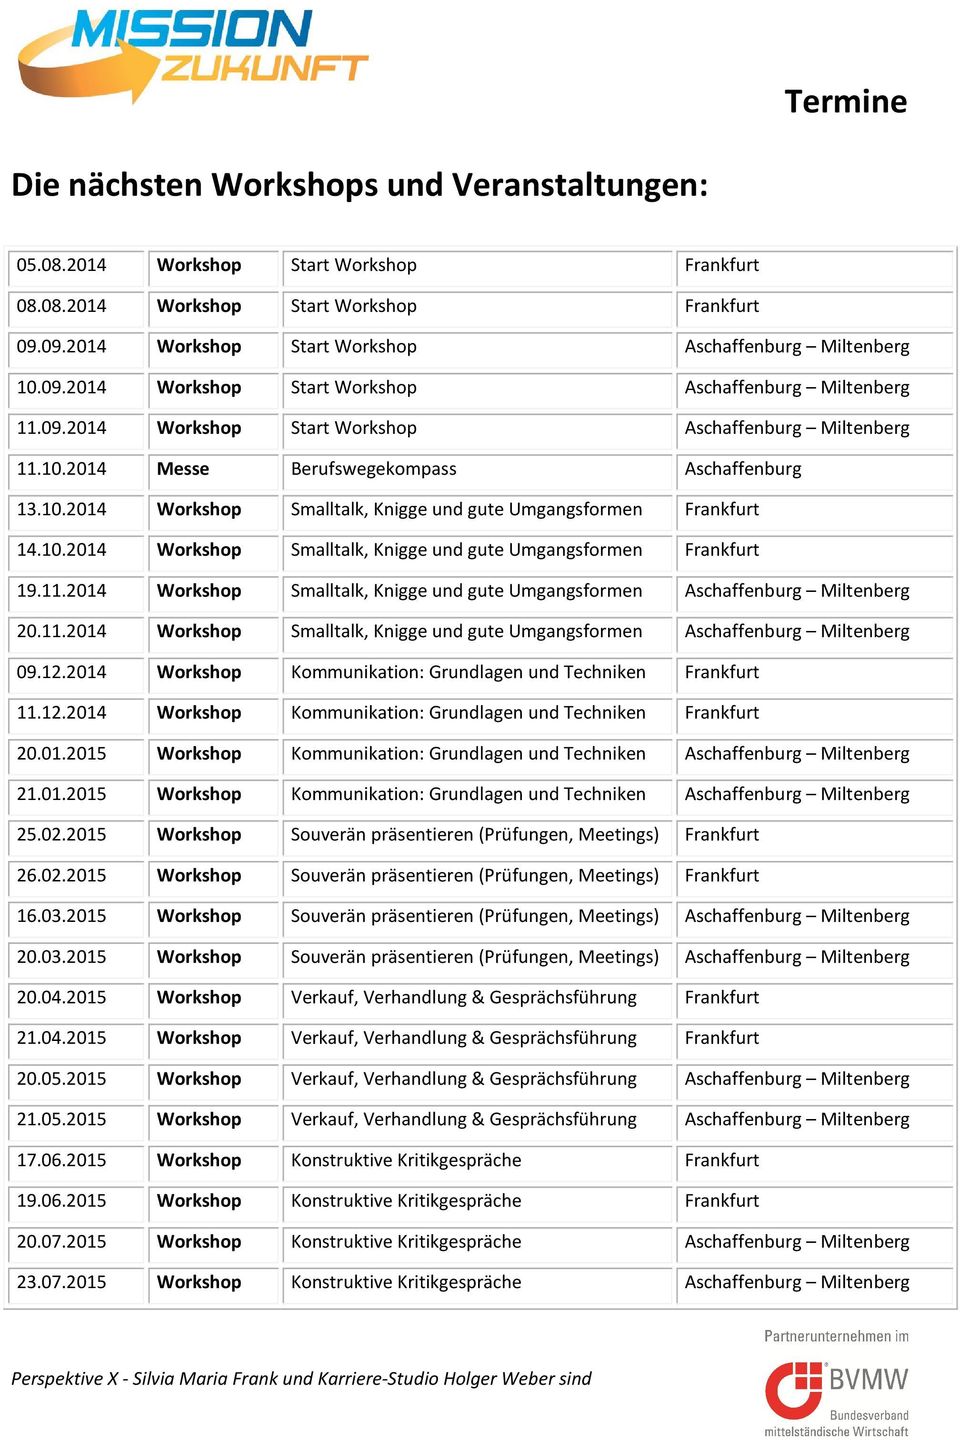 11.2014 Workshop Smalltalk, Knigge und gute Umgangsformen Miltenberg 20.11.2014 Workshop Smalltalk, Knigge und gute Umgangsformen Miltenberg 09.12.